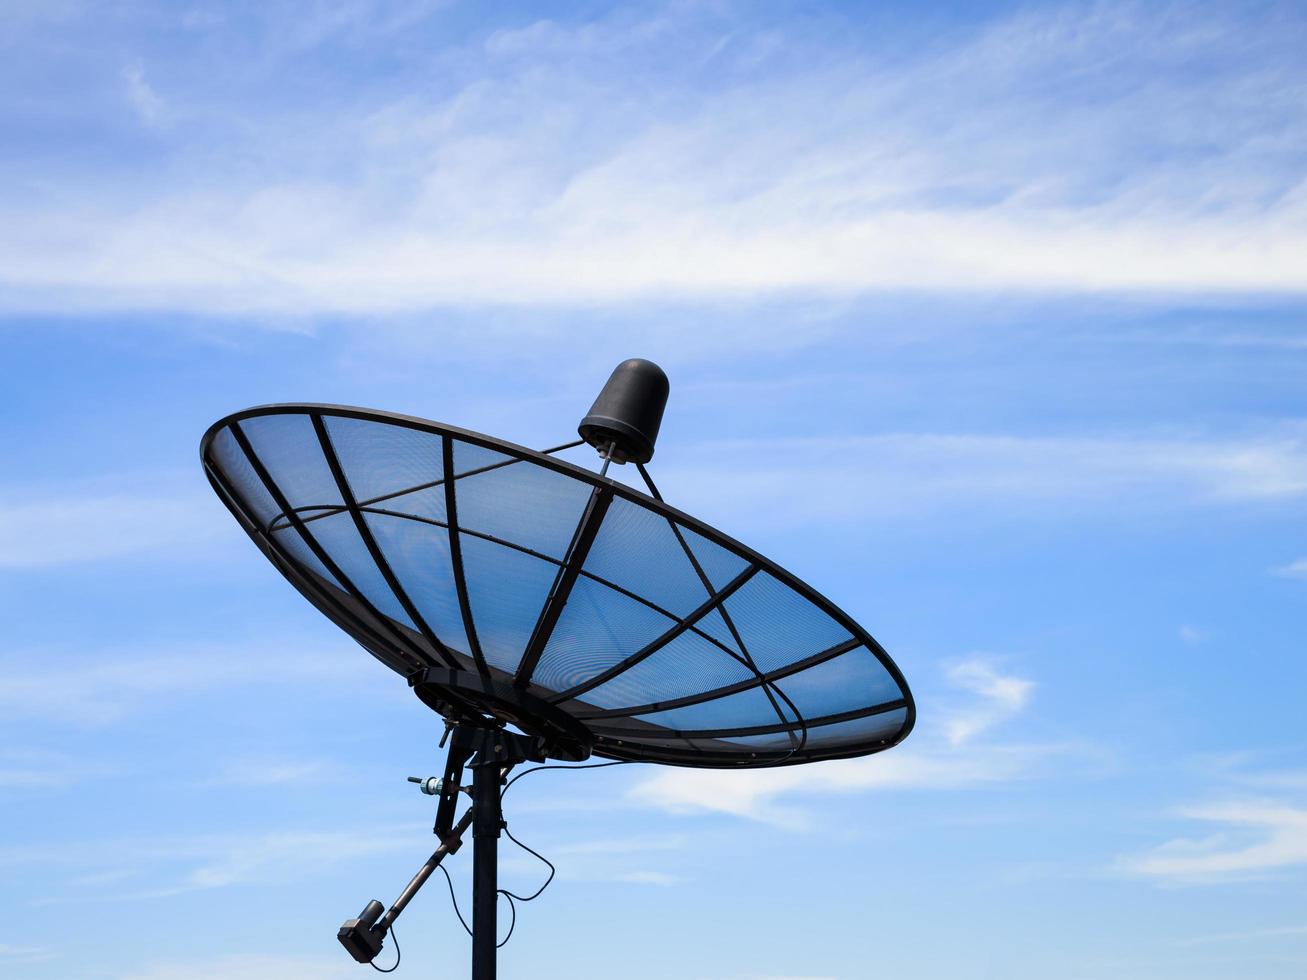 receptor de antena parabólica doméstico con cielo azul foto